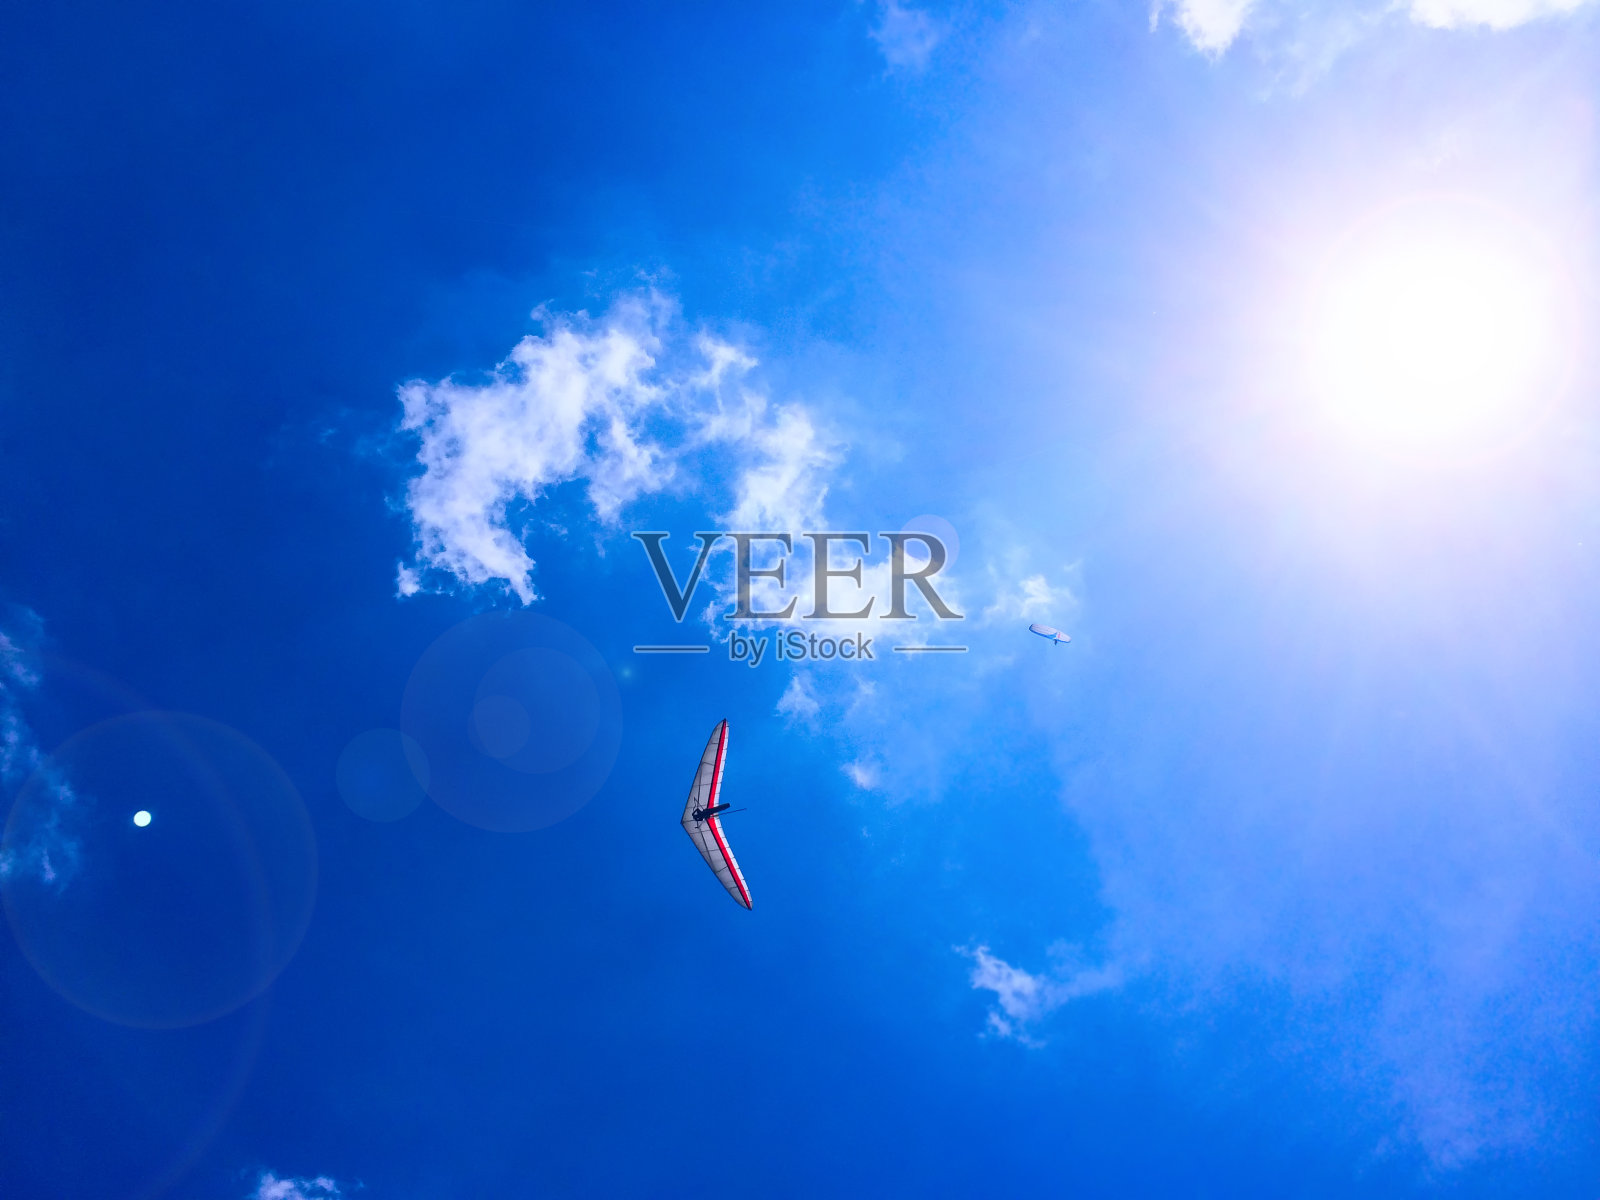 蓝天白云背景下的滑翔伞和悬挂式滑翔伞照片摄影图片